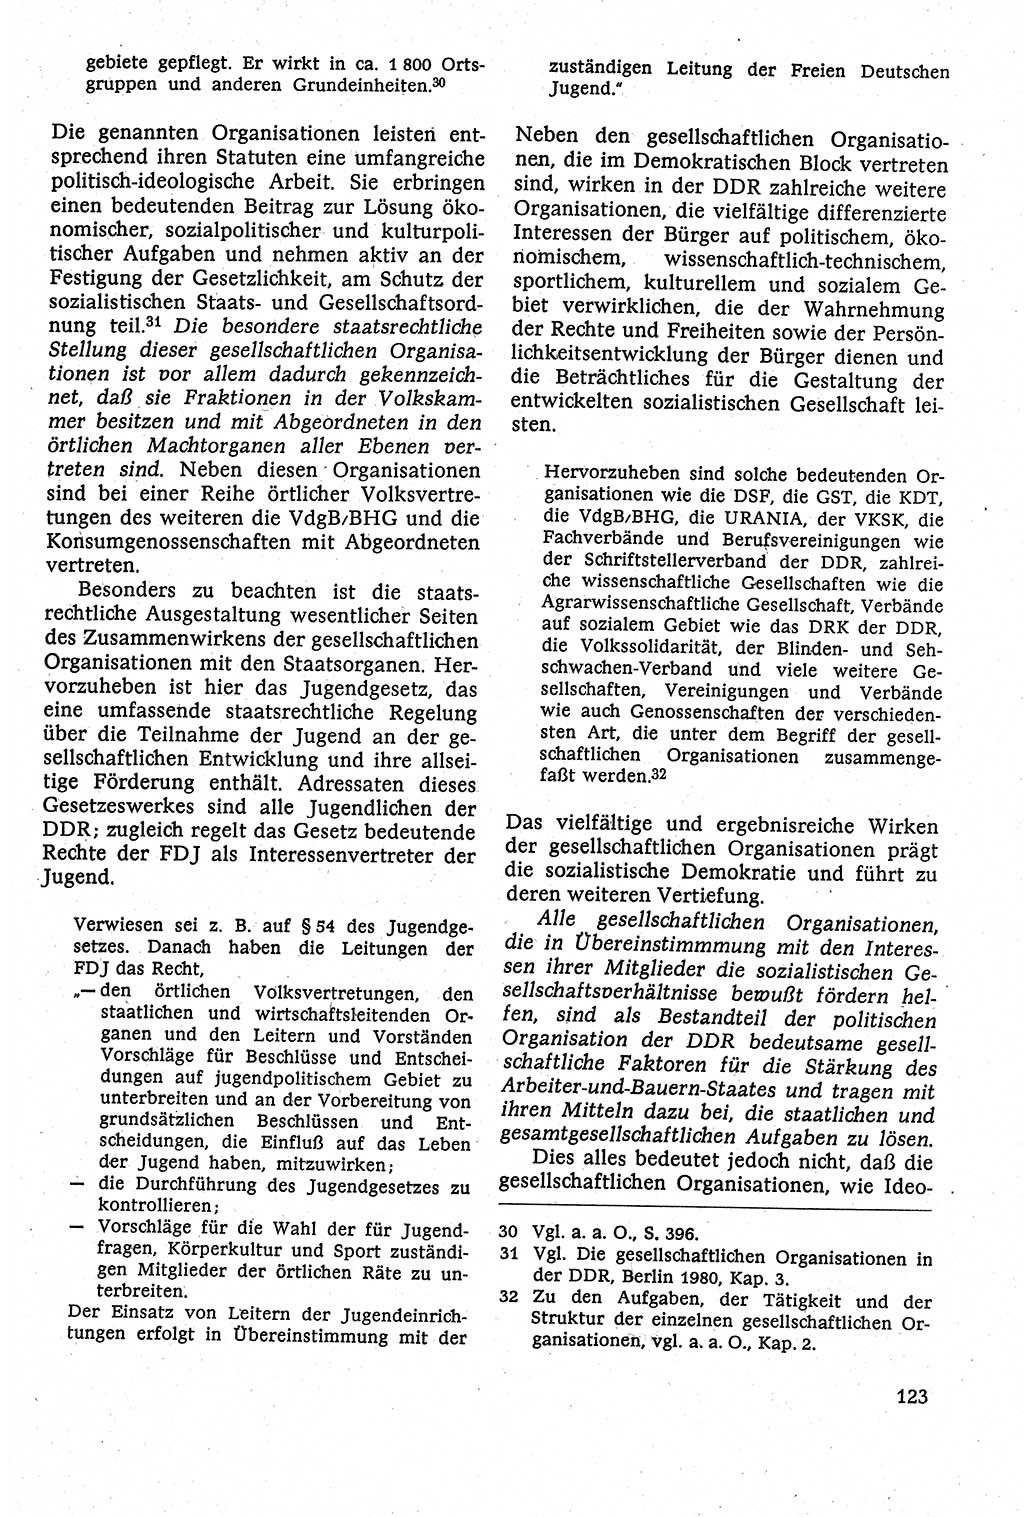 Staatsrecht der DDR [Deutsche Demokratische Republik (DDR)], Lehrbuch 1984, Seite 123 (St.-R. DDR Lb. 1984, S. 123)